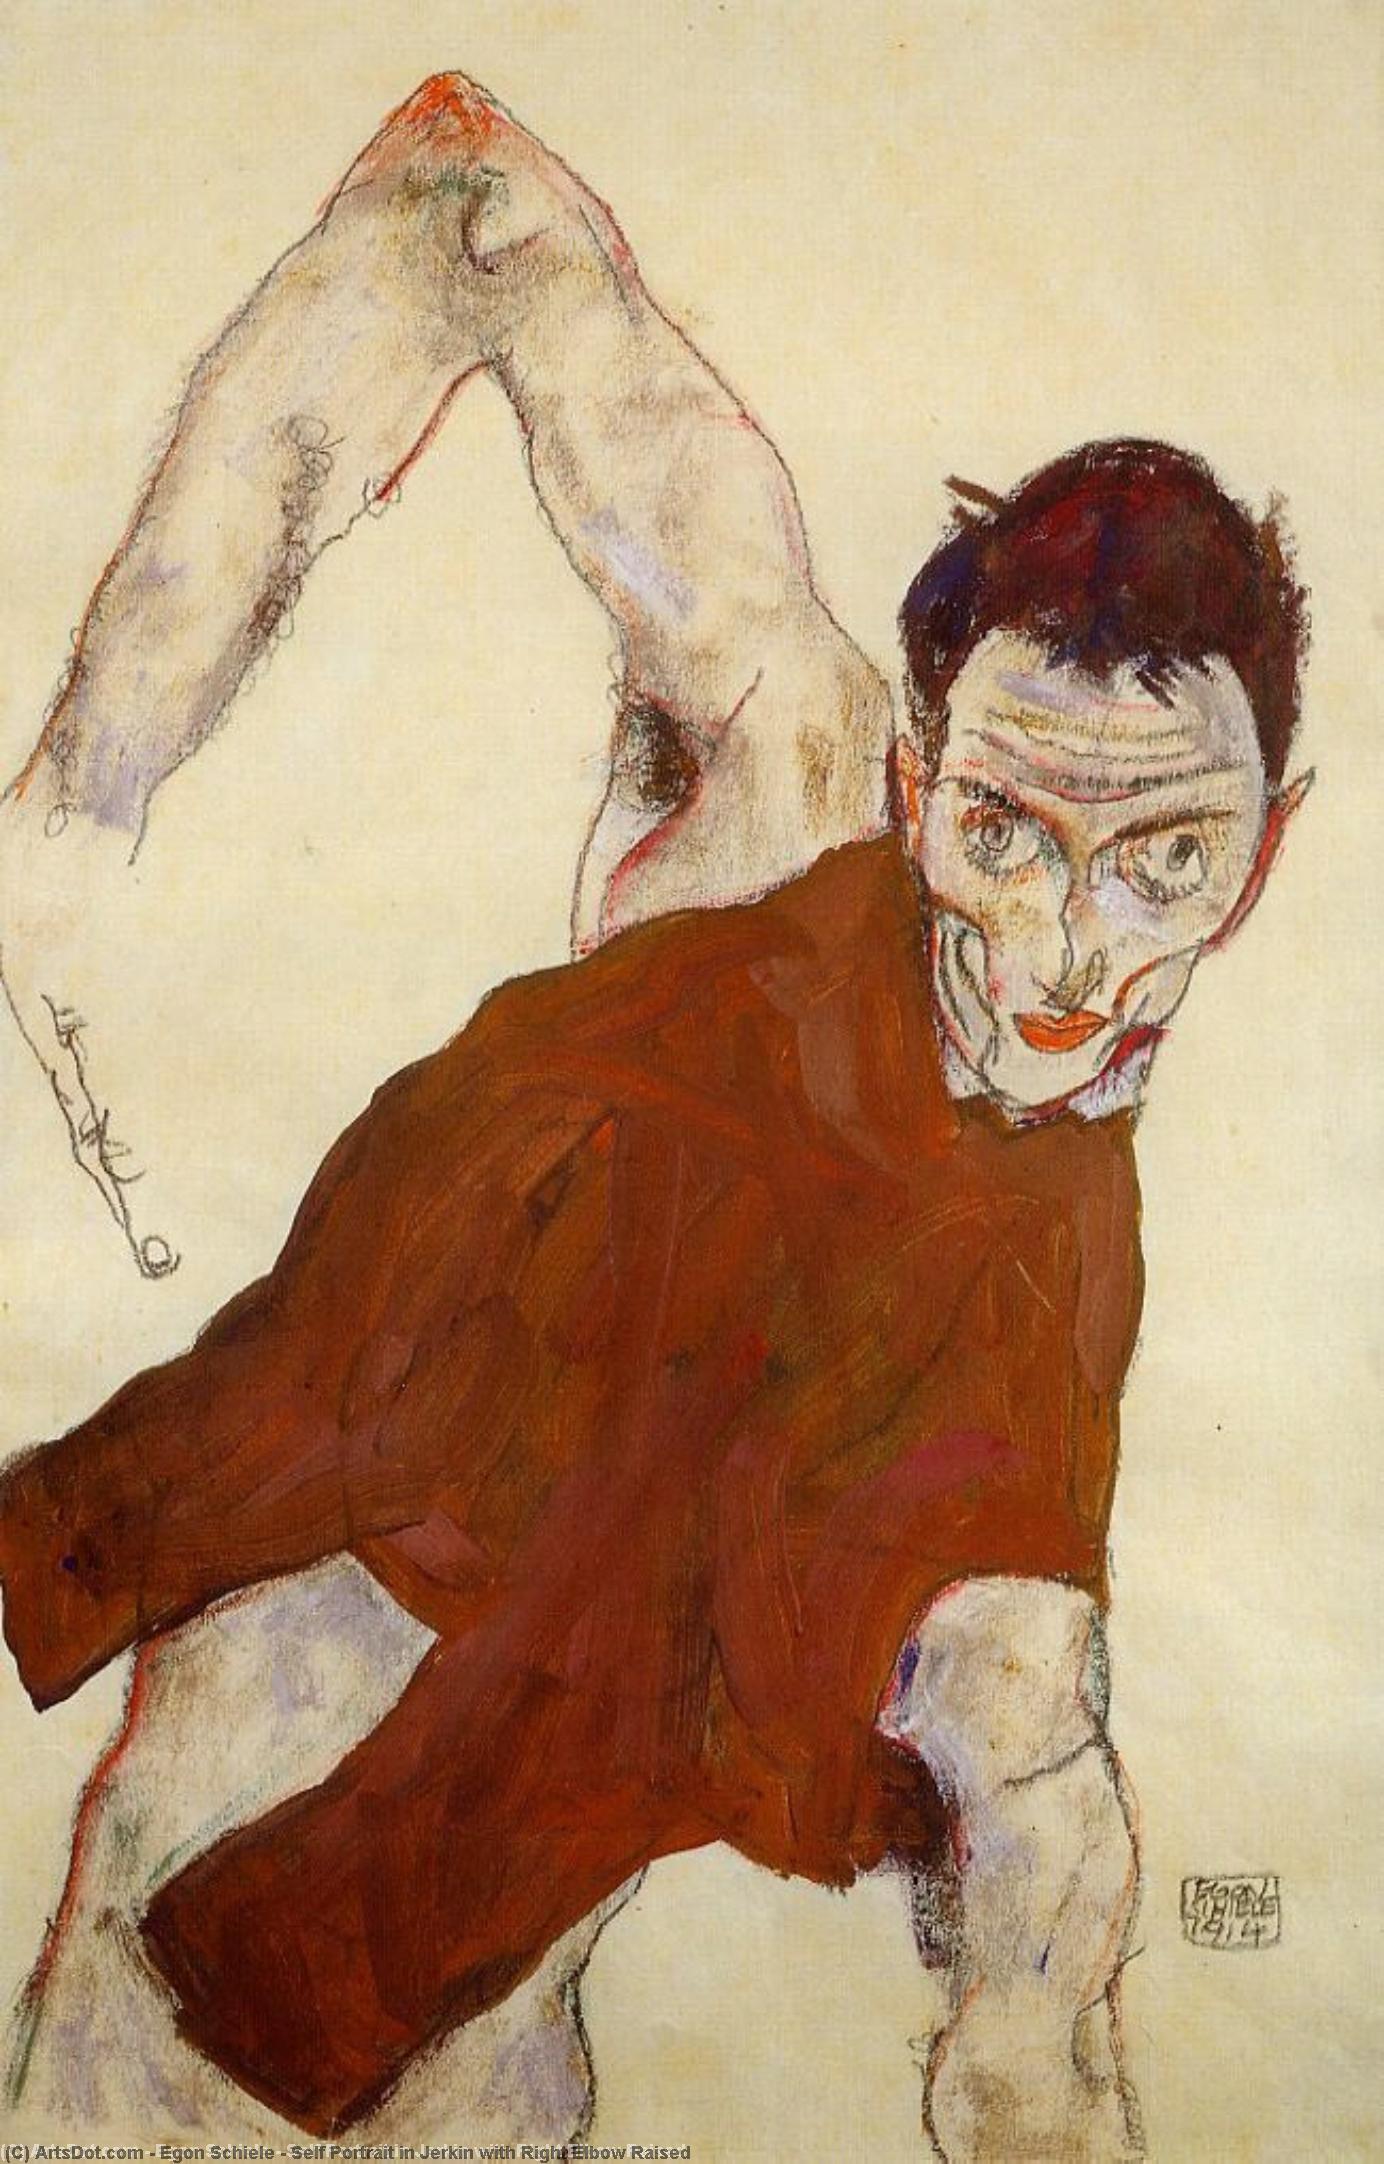 WikiOO.org - Encyclopedia of Fine Arts - Målning, konstverk Egon Schiele - Self Portrait in Jerkin with Right Elbow Raised